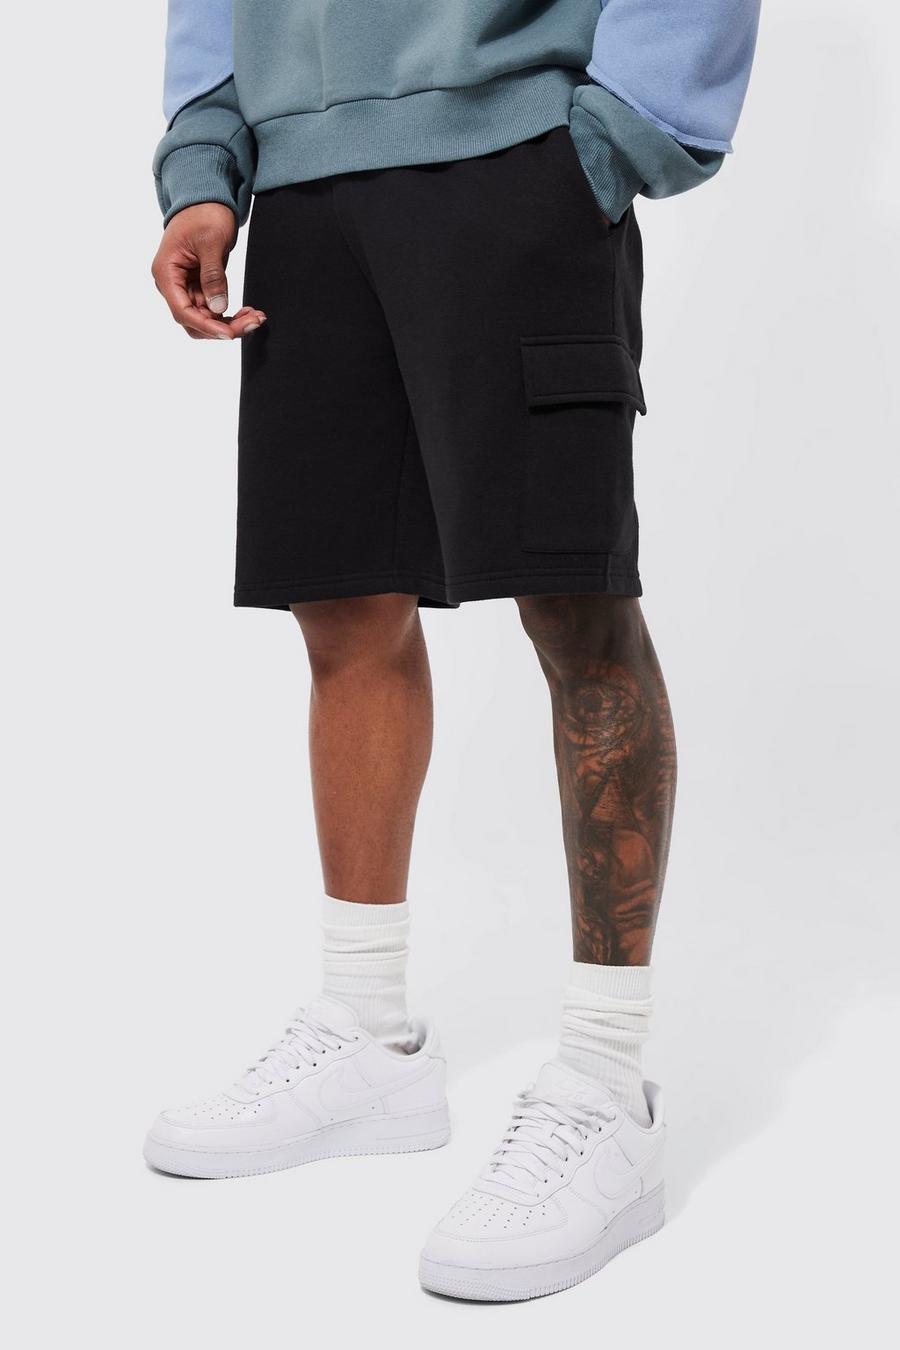 Lockere mittellange Basic Jersey Cargo-Shorts, Black schwarz